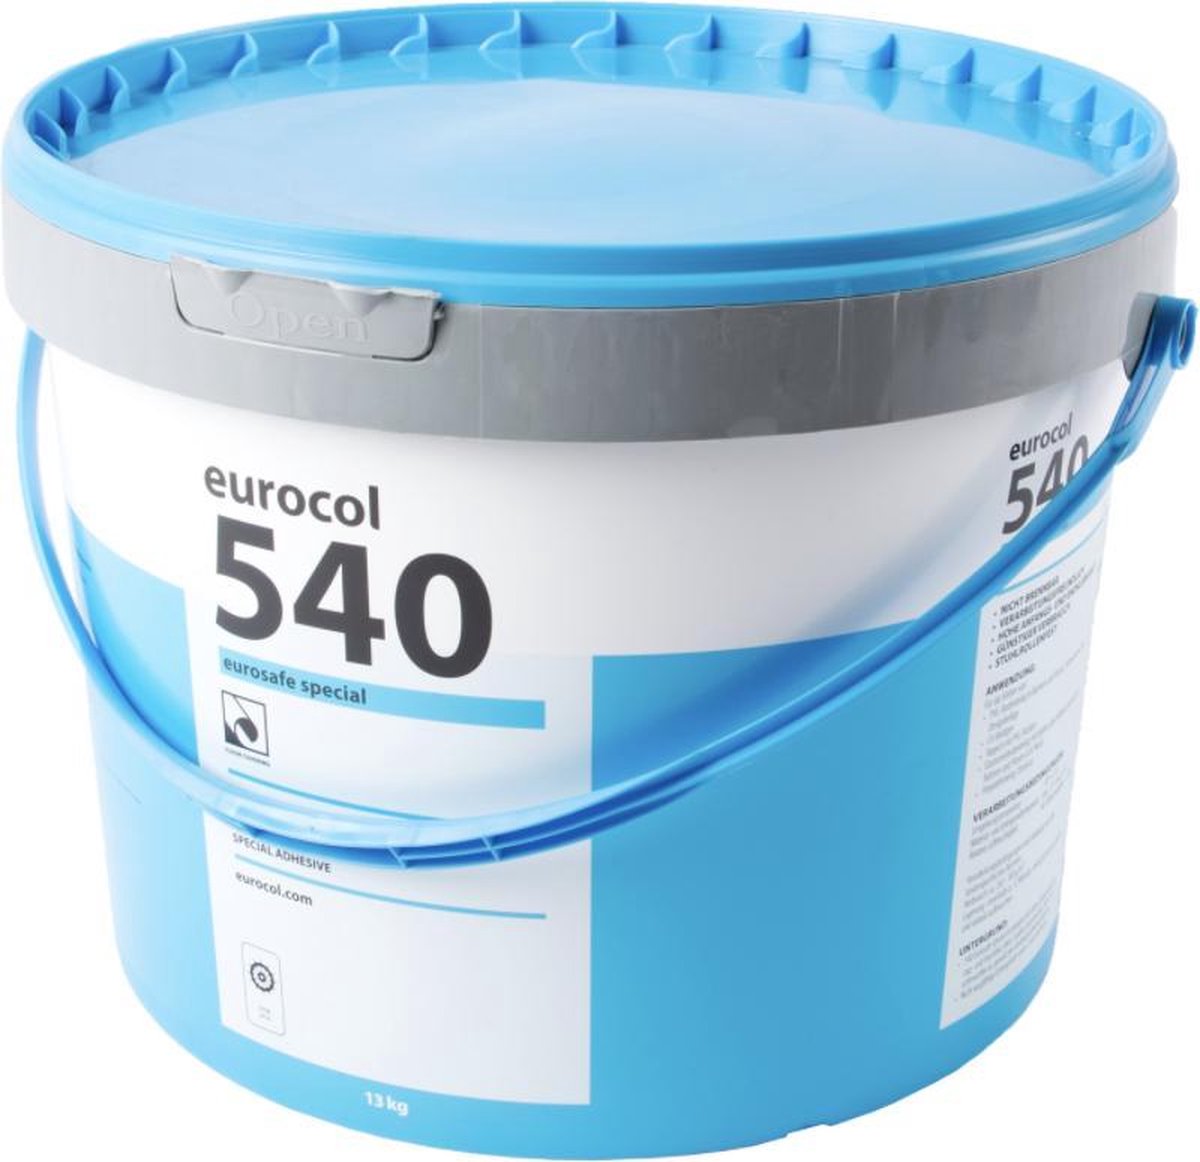 Eurocol Lijm 540 13 kilo-n snel hechtende lijm voor het verlijmen van vloerbedekking, PVC vloeren, rubber vloerbedekking en vinyl. Eurocol 540 is oplosmiddelenvrij en geschikt voor gebruik binnenshuis.